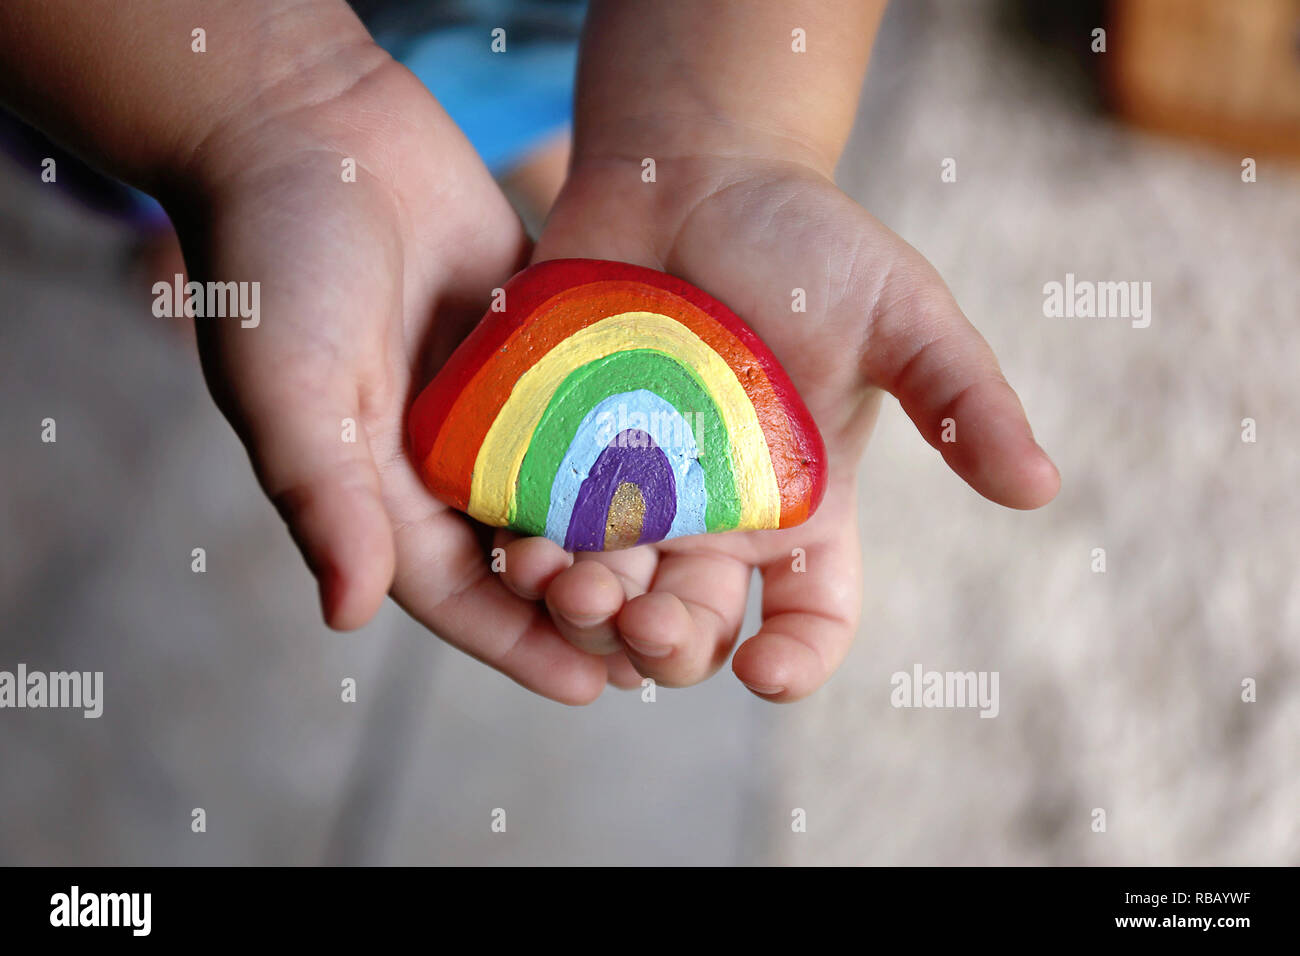 Le mani di un giovane bambino bambino sono dolcemente tenendo un acrilico verniciato rainbow rock. Foto Stock